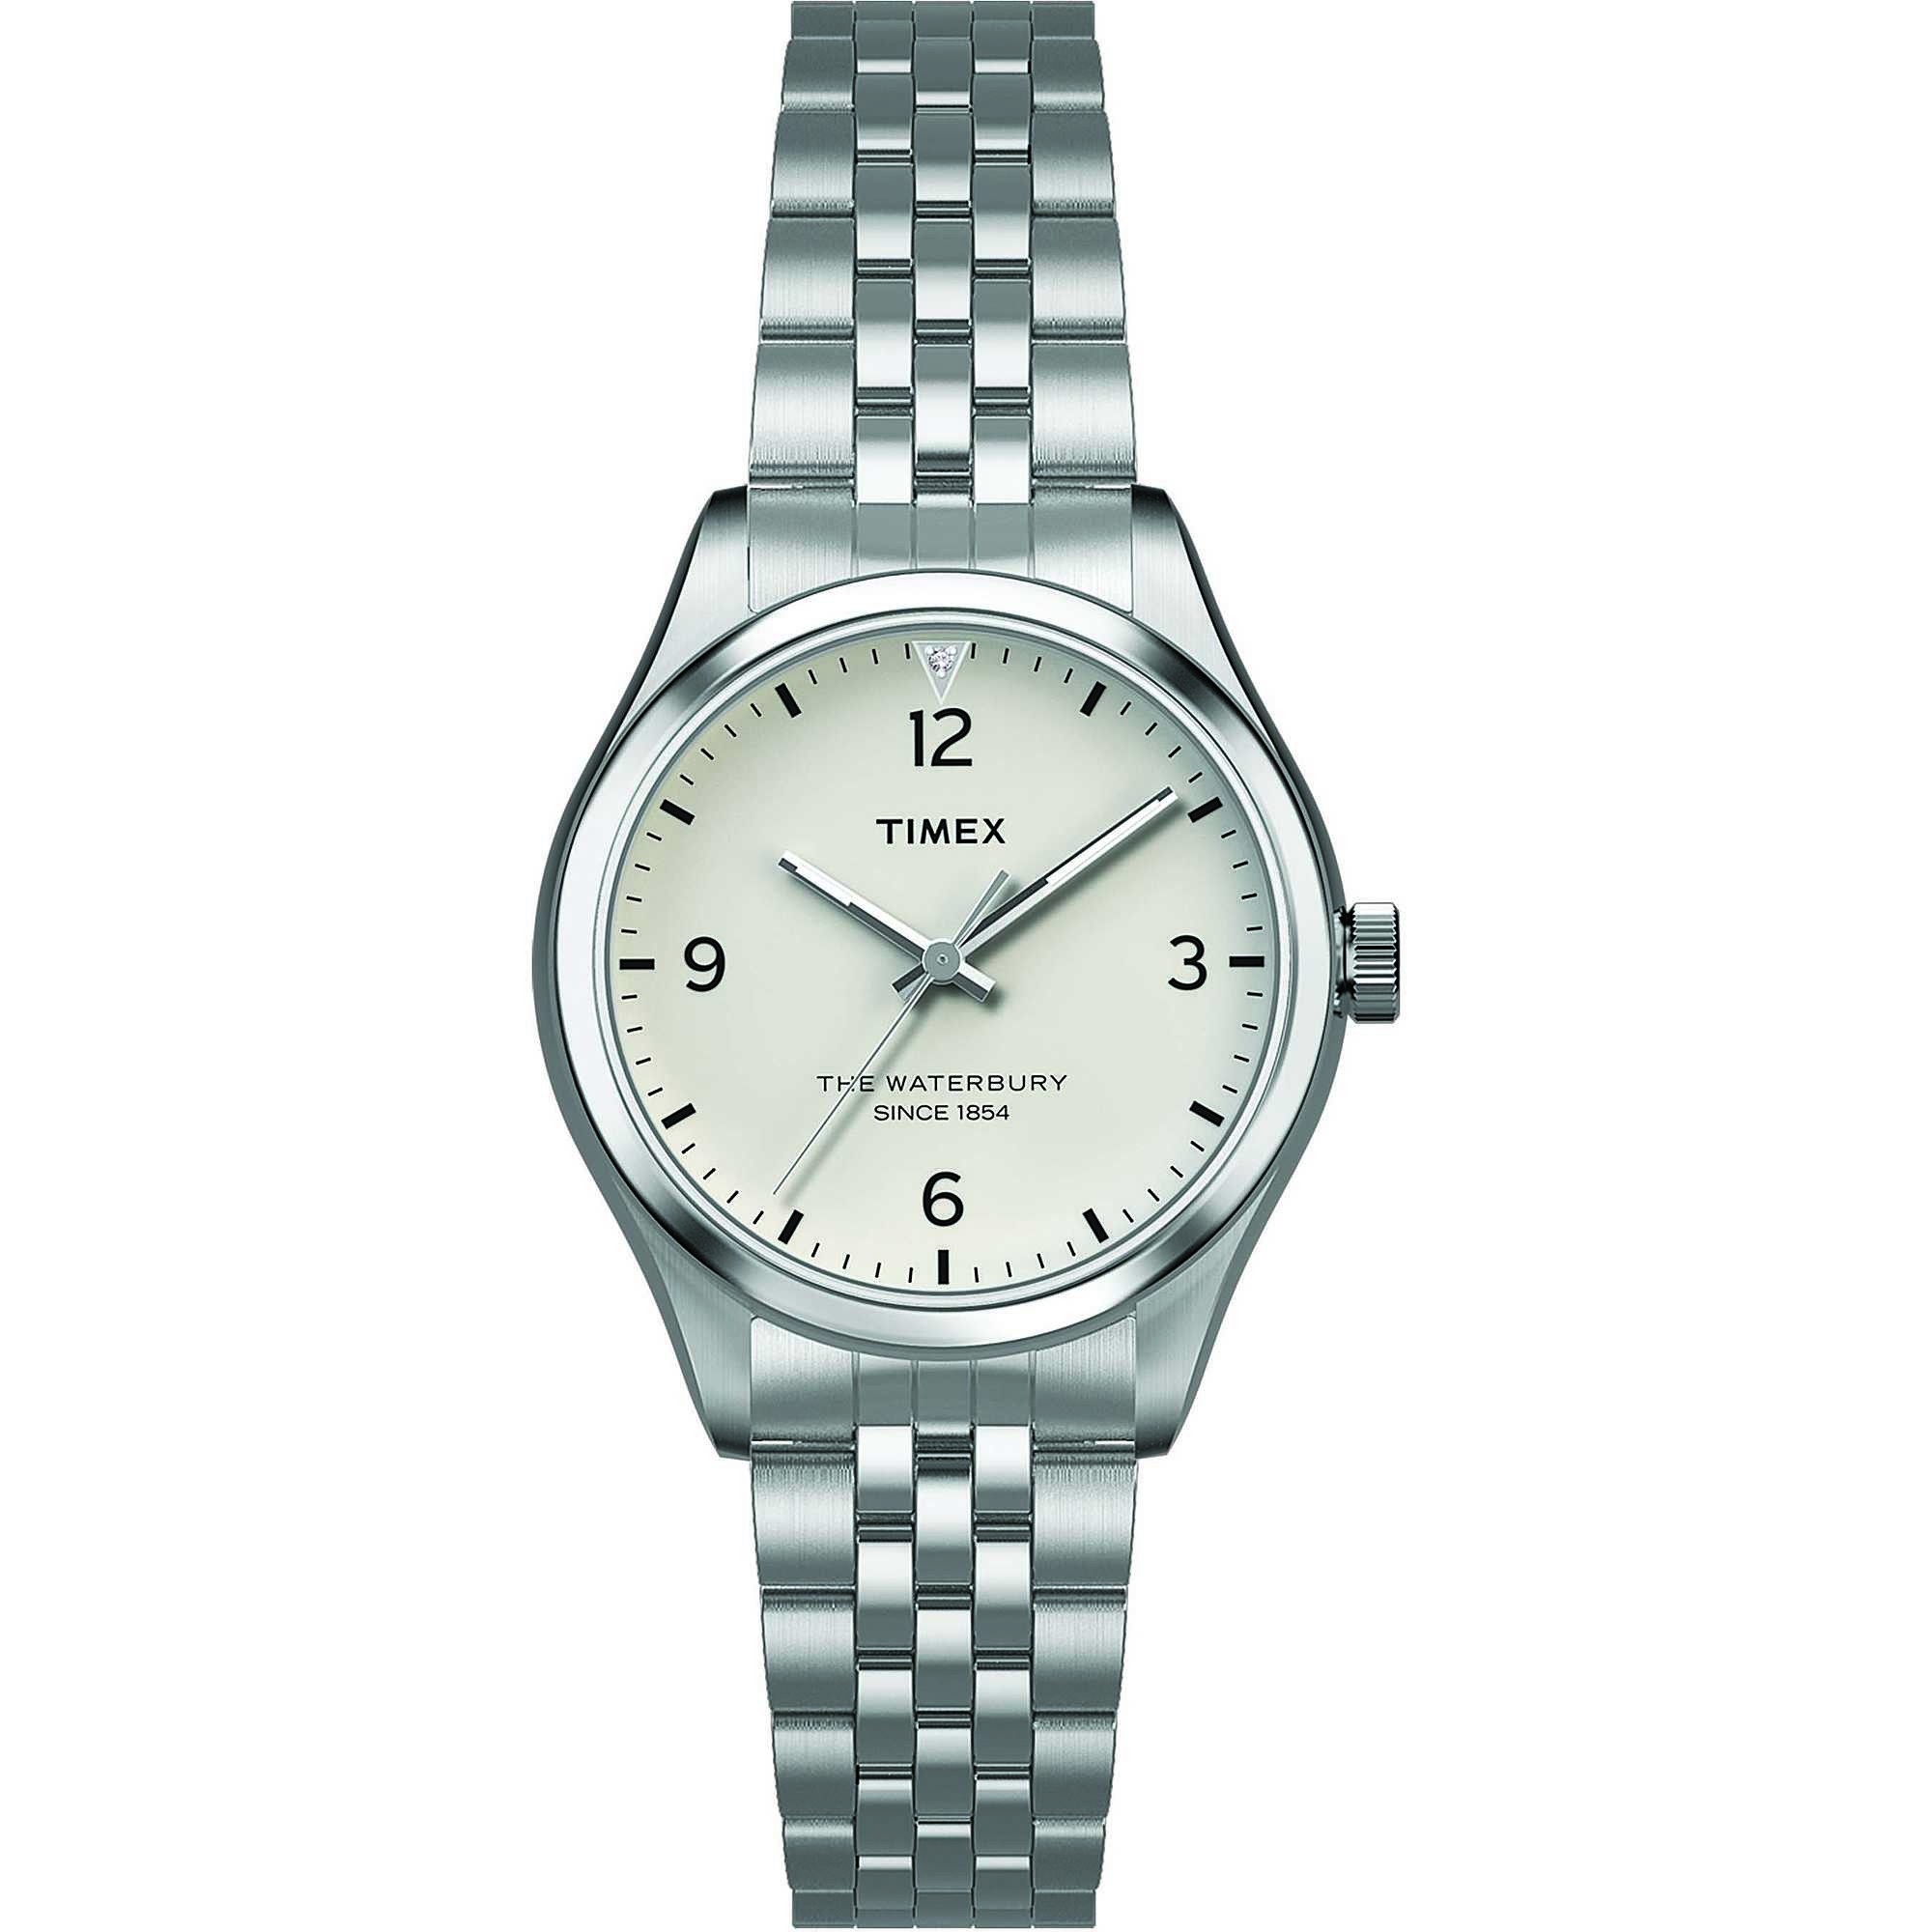 TIMEX: Orologio donna solo tempo della collezione WATERBURY bracciale in acciaio, TW2R69400